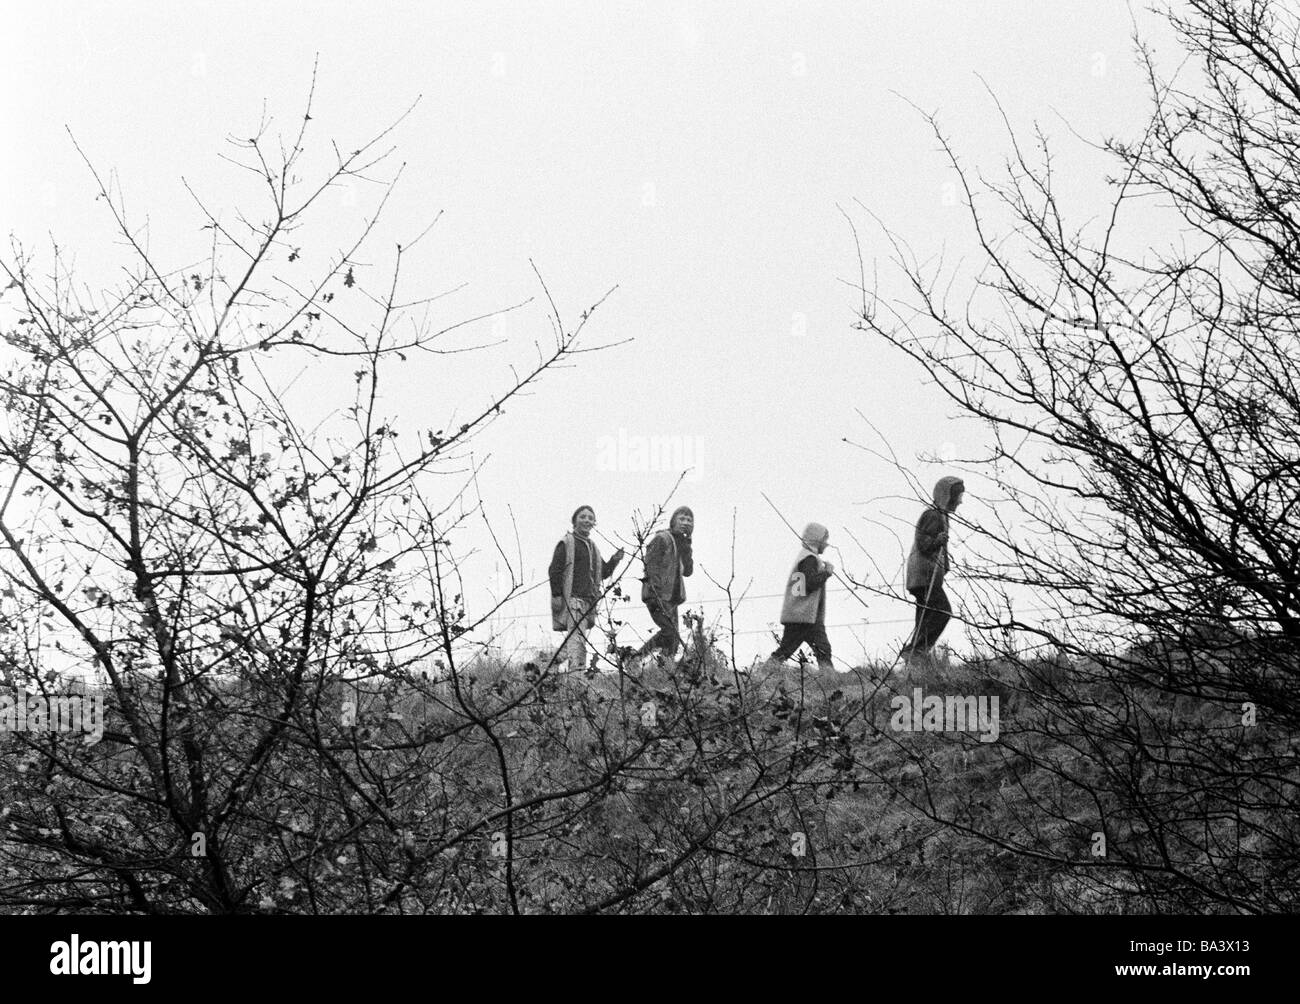 Negli anni settanta, foto in bianco e nero, persone, bambini, quattro ragazzi vanno a fare una passeggiata nei dintorni naturali, di età compresa tra i 10 e i 14 anni Foto Stock